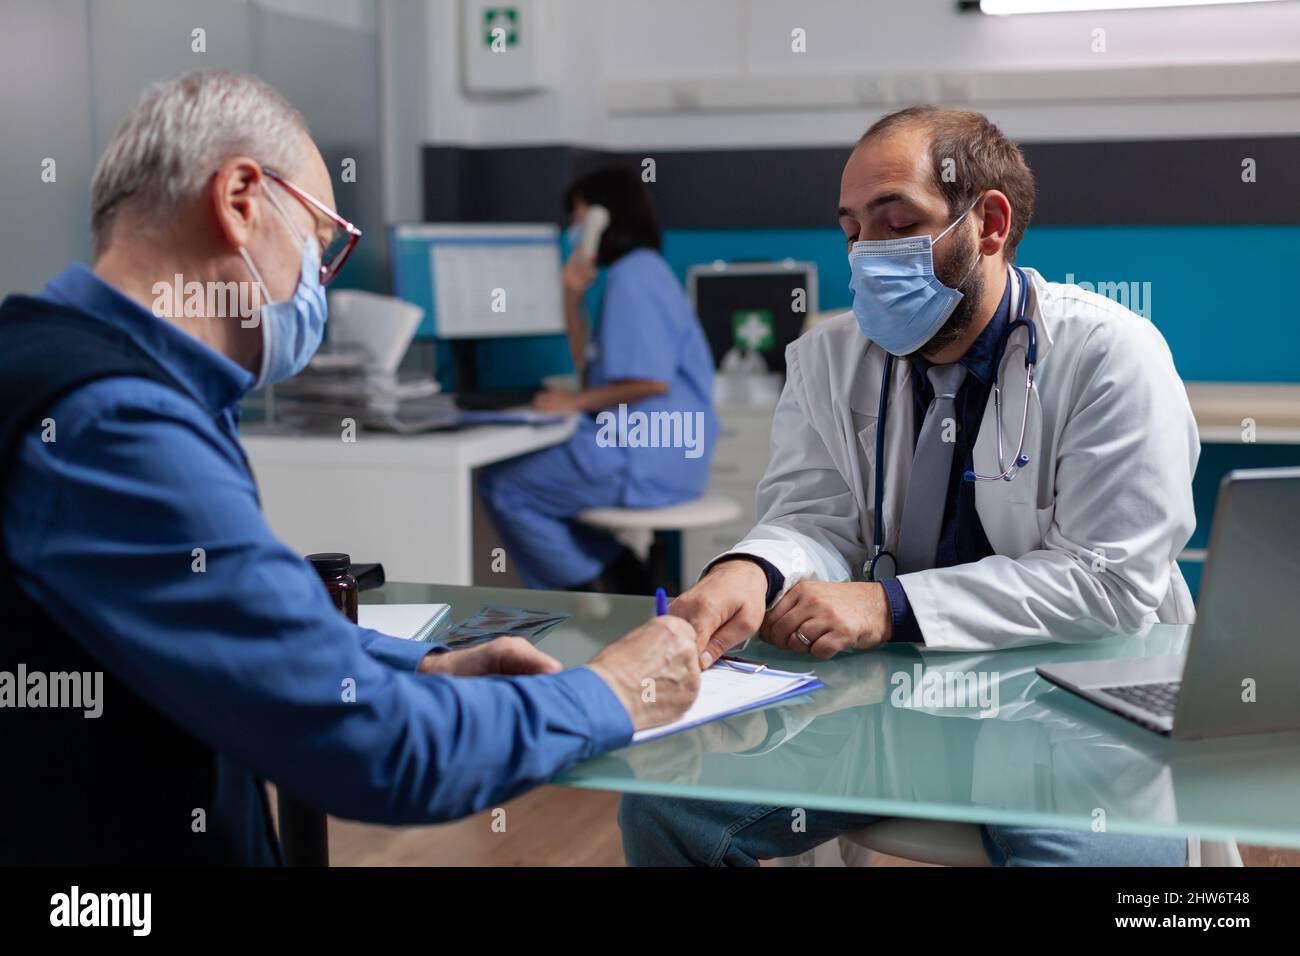 Un patient senior signe un rapport de consultation au bureau médical avec  un médecin, portant un masque facial. Homme aîné faisant la signature sur  le formulaire, rencontre avec le médecin généraliste à